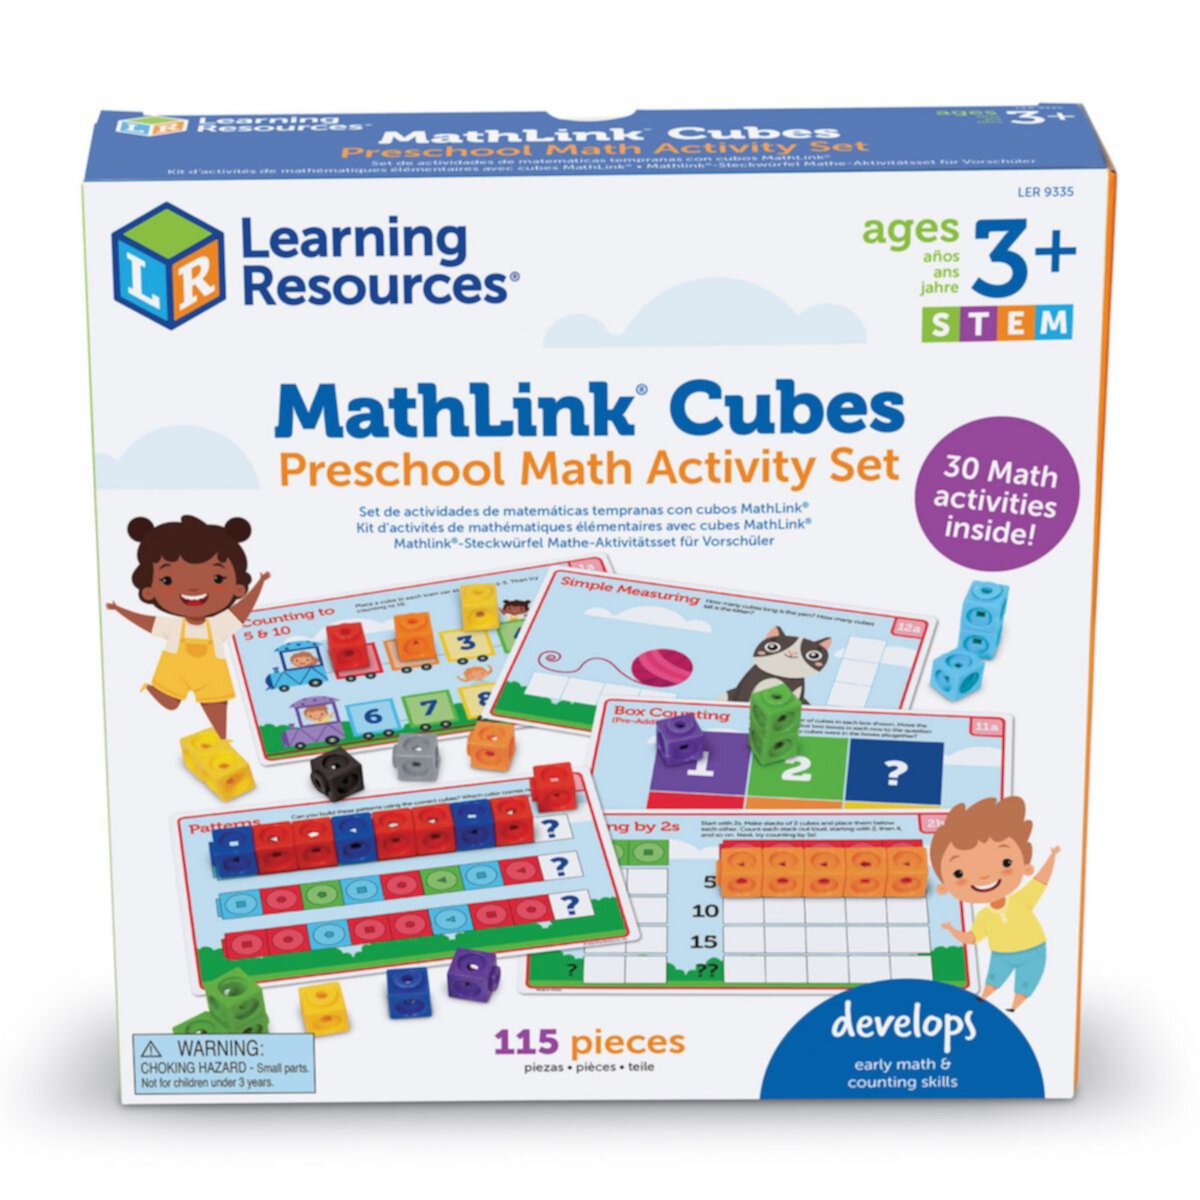 Учебные ресурсы Набор MathLink Cubes для дошкольников по математике Learning Resources